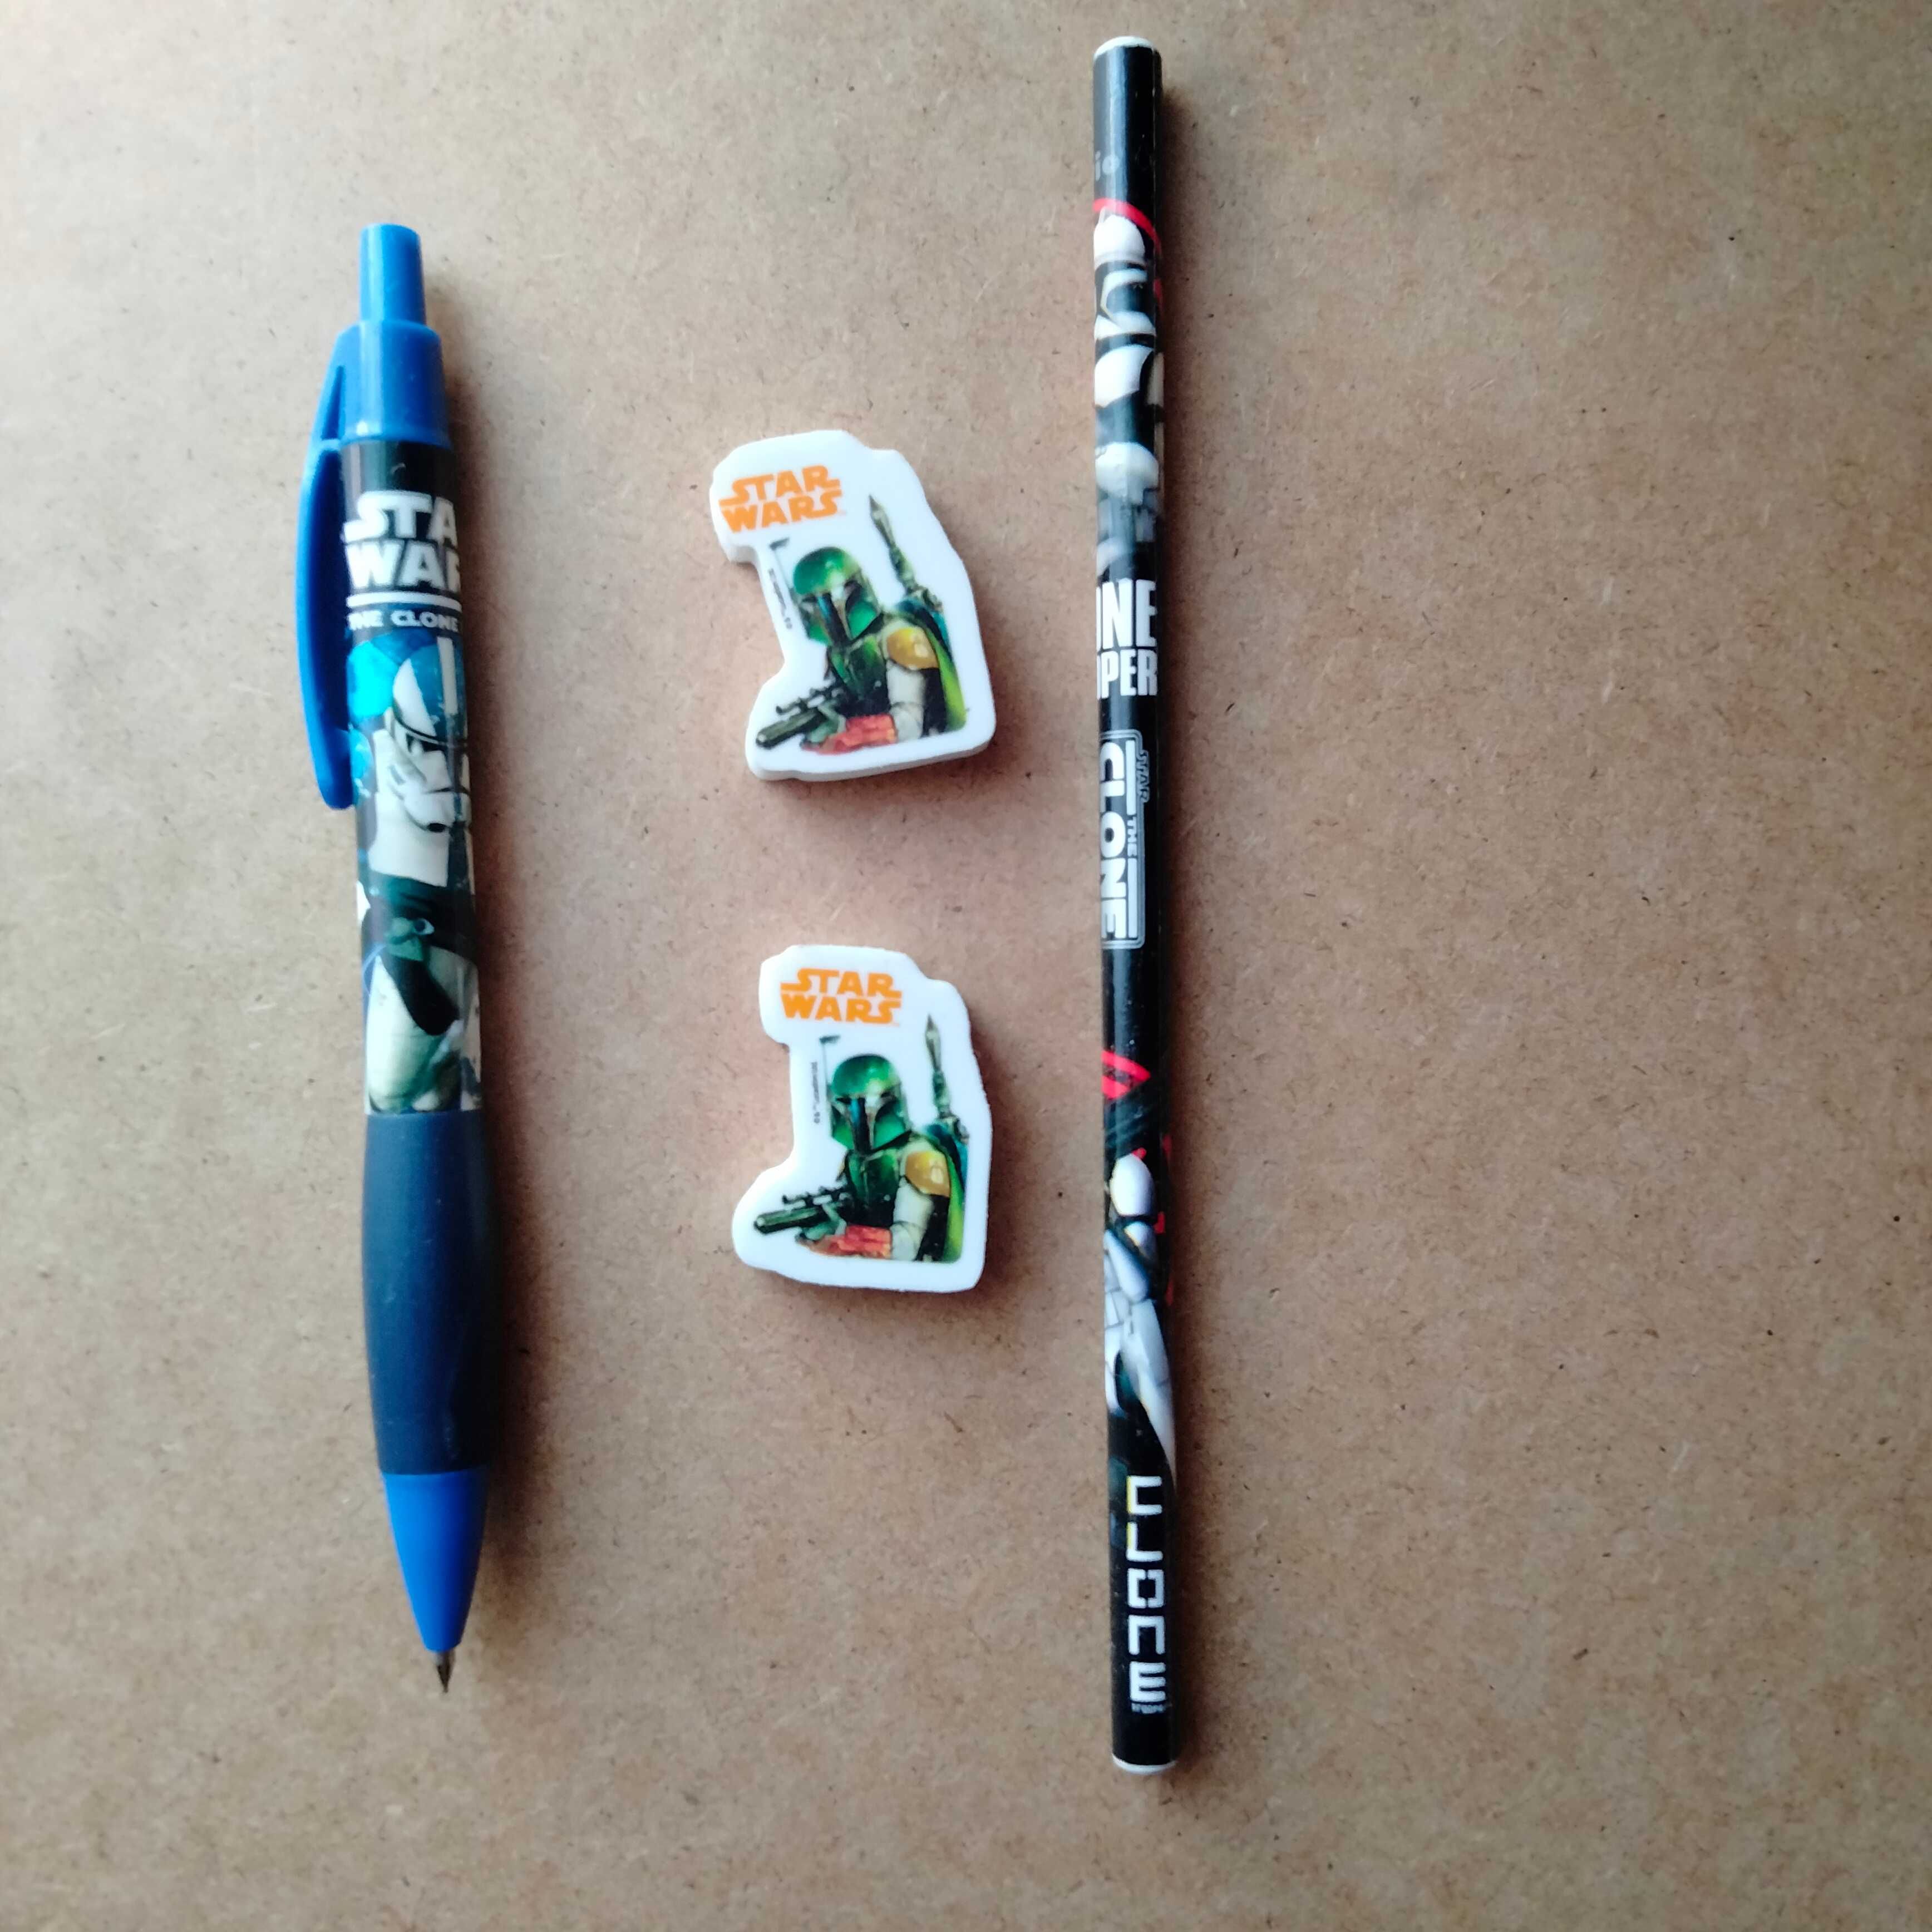 2 ołówki, tradycyjny i automatyczny, 2 gumki do zmazywania, Star Wars